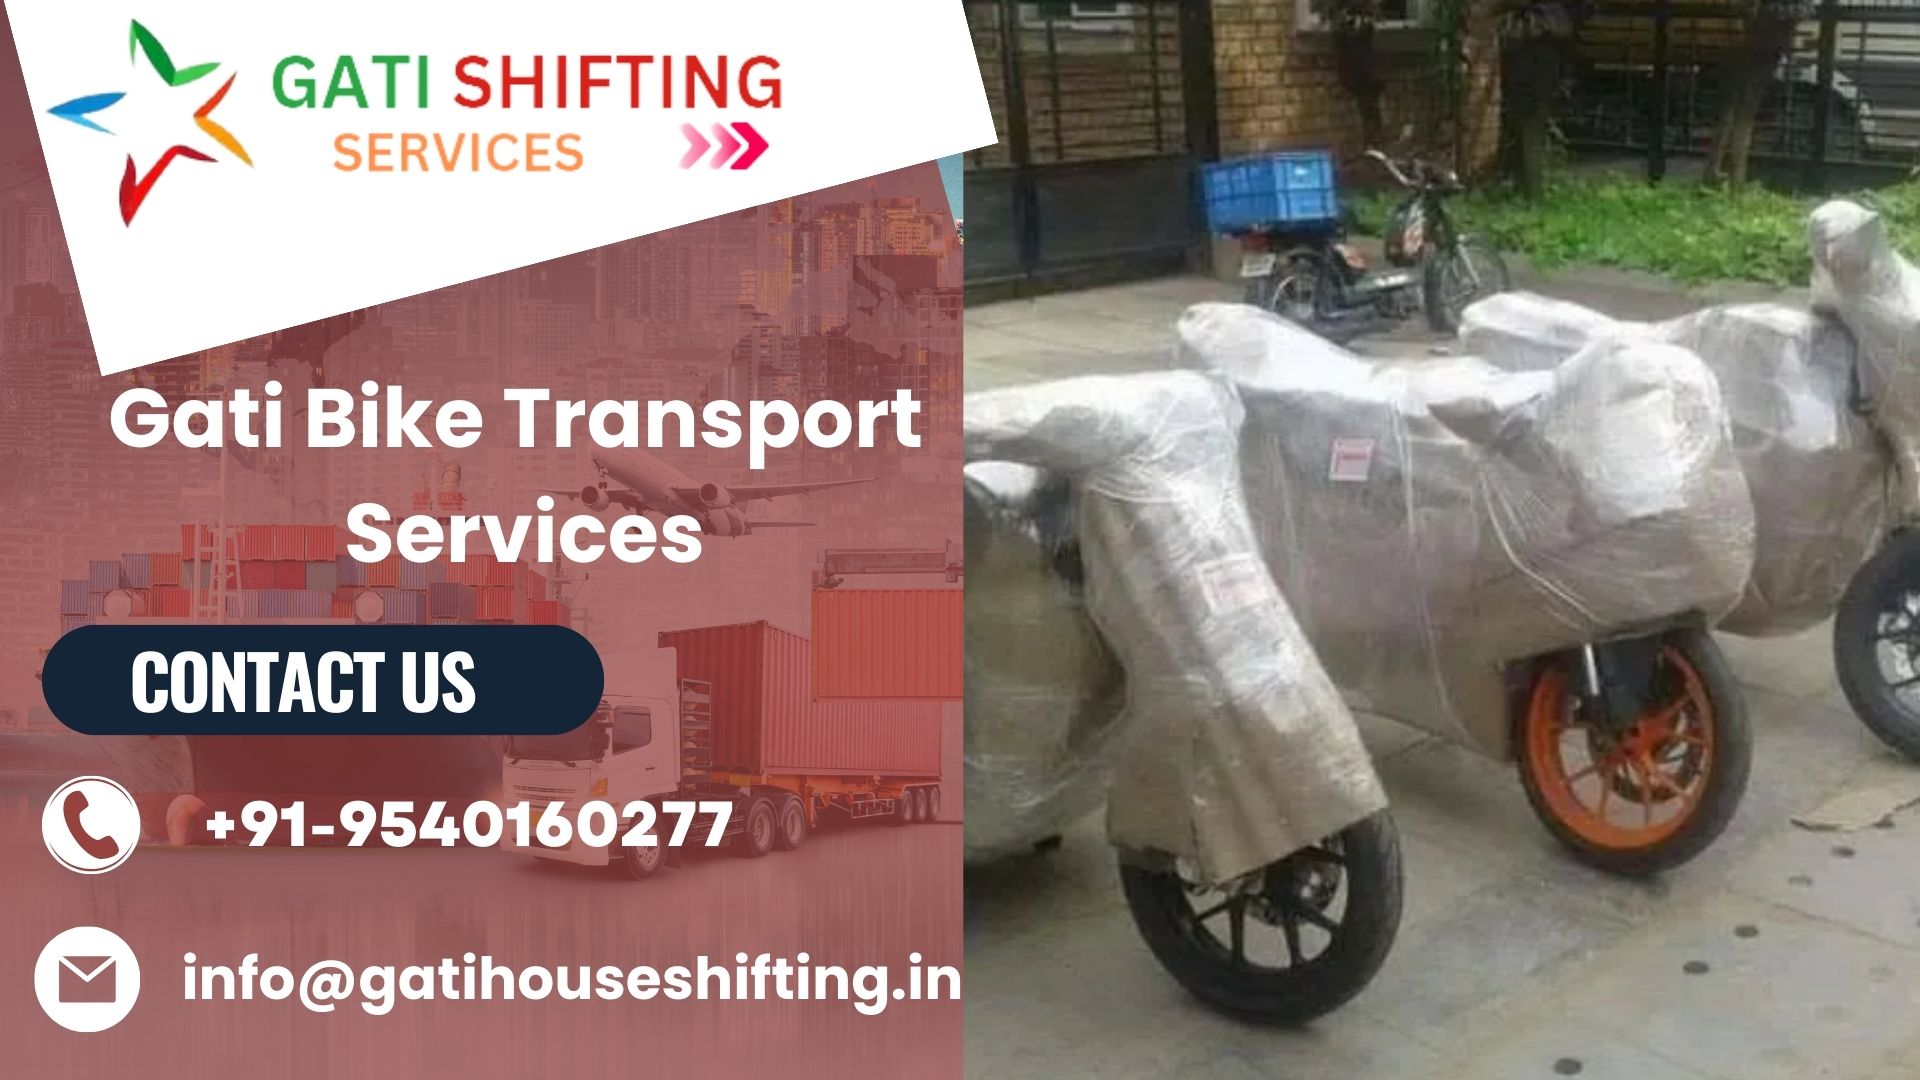 Gati bike transport service in Noida